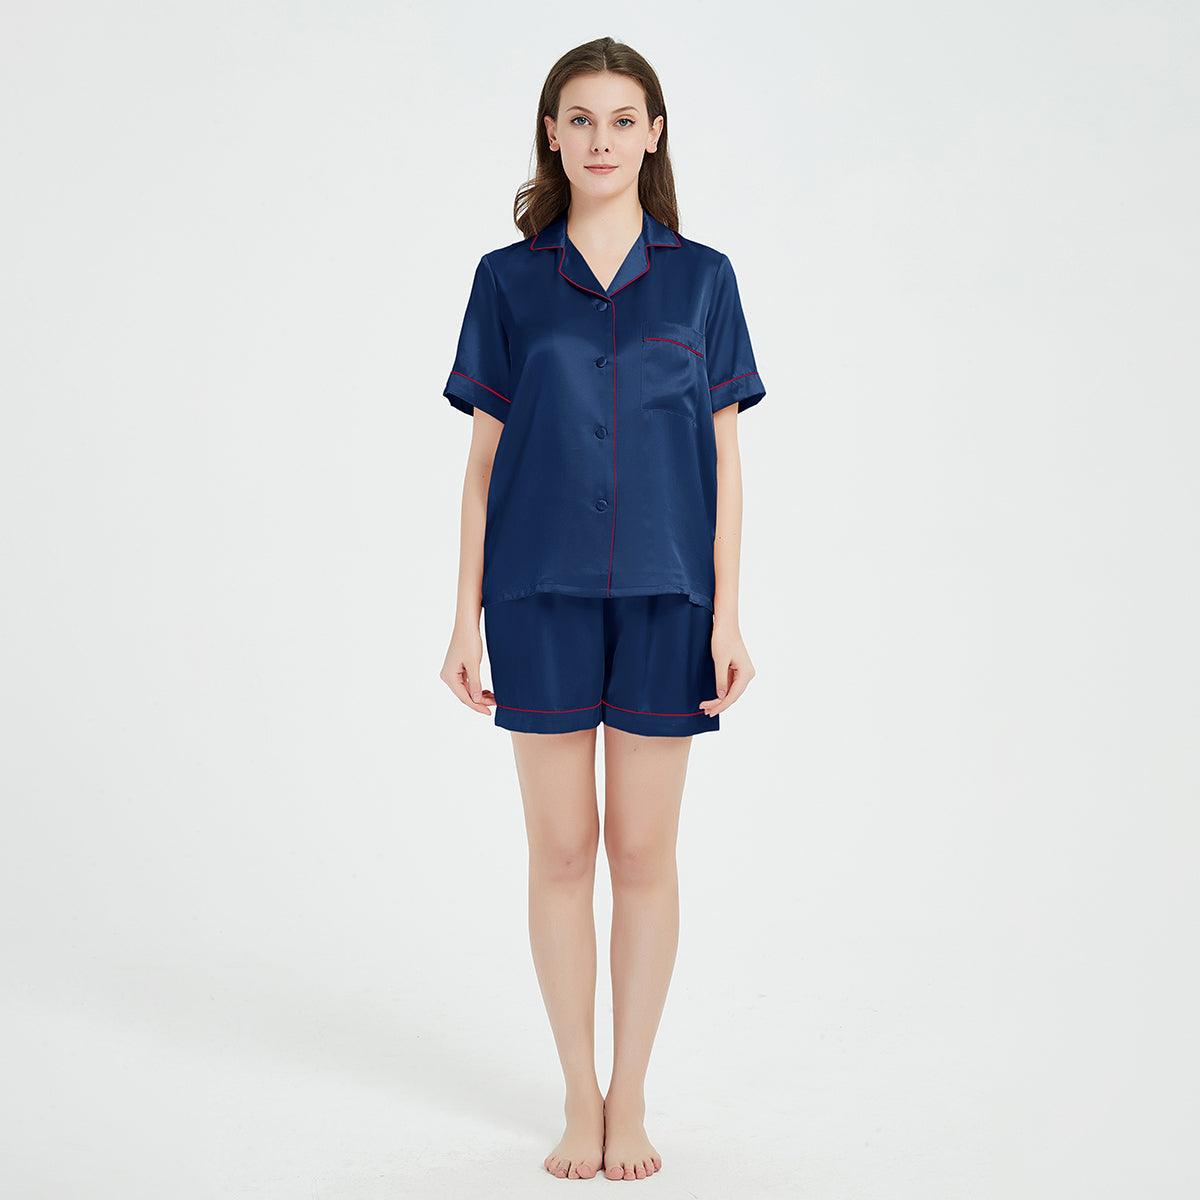 Silk Pajamas Shorts Set for Women silk pajamas nightwear - DIANASILK